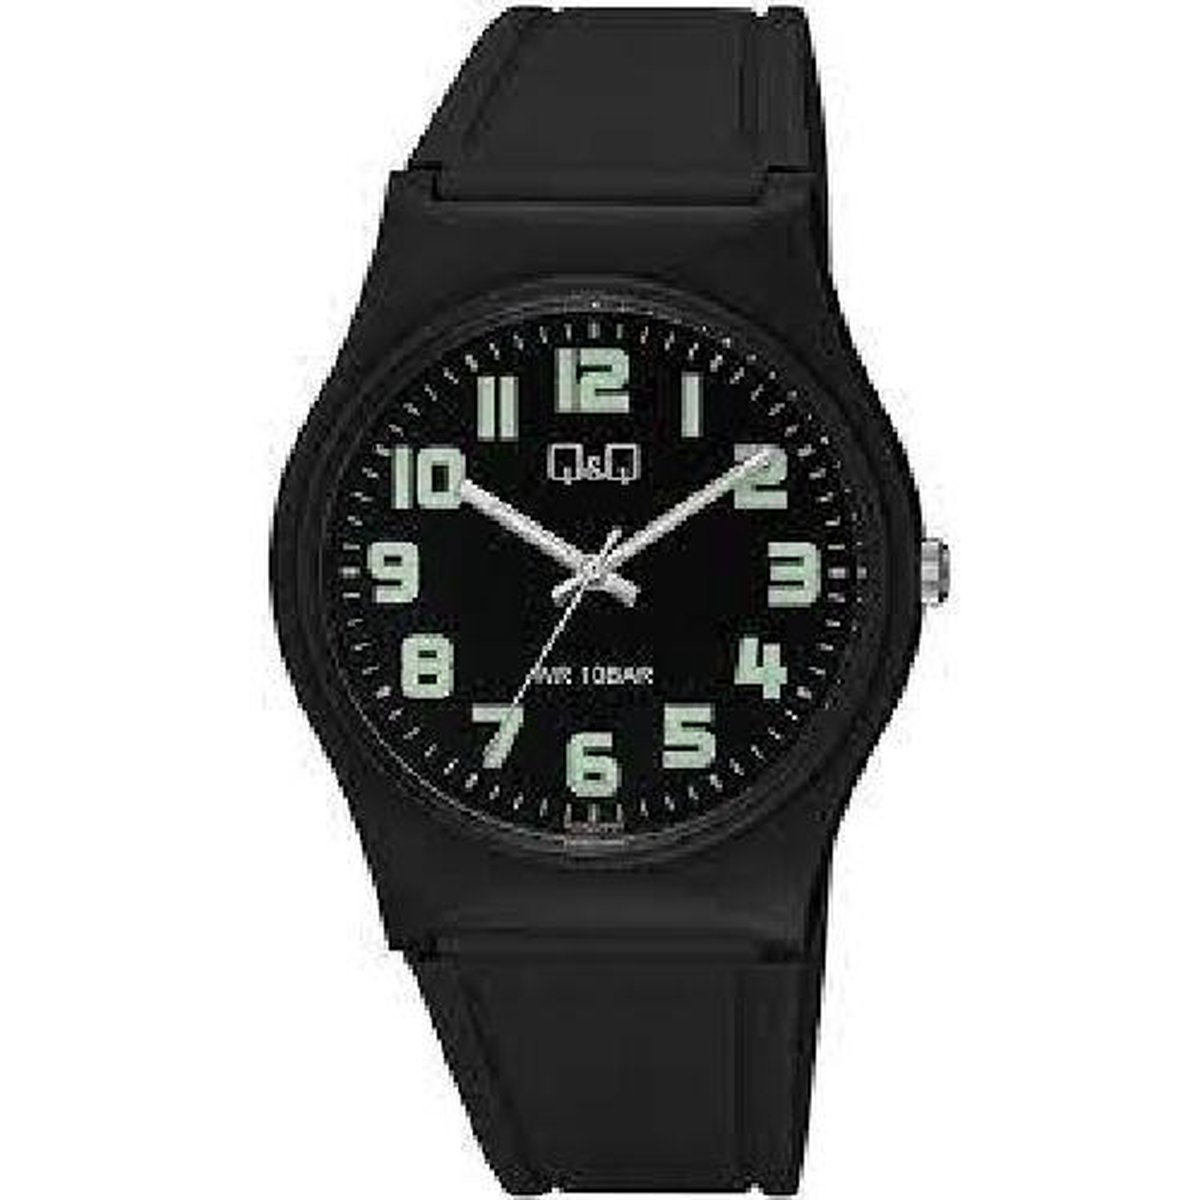 Sportief horloge van Q&Q met zwart rubberen band 10 atm waterdicht ideaal voor zwemmen en sporten model vs42j002y